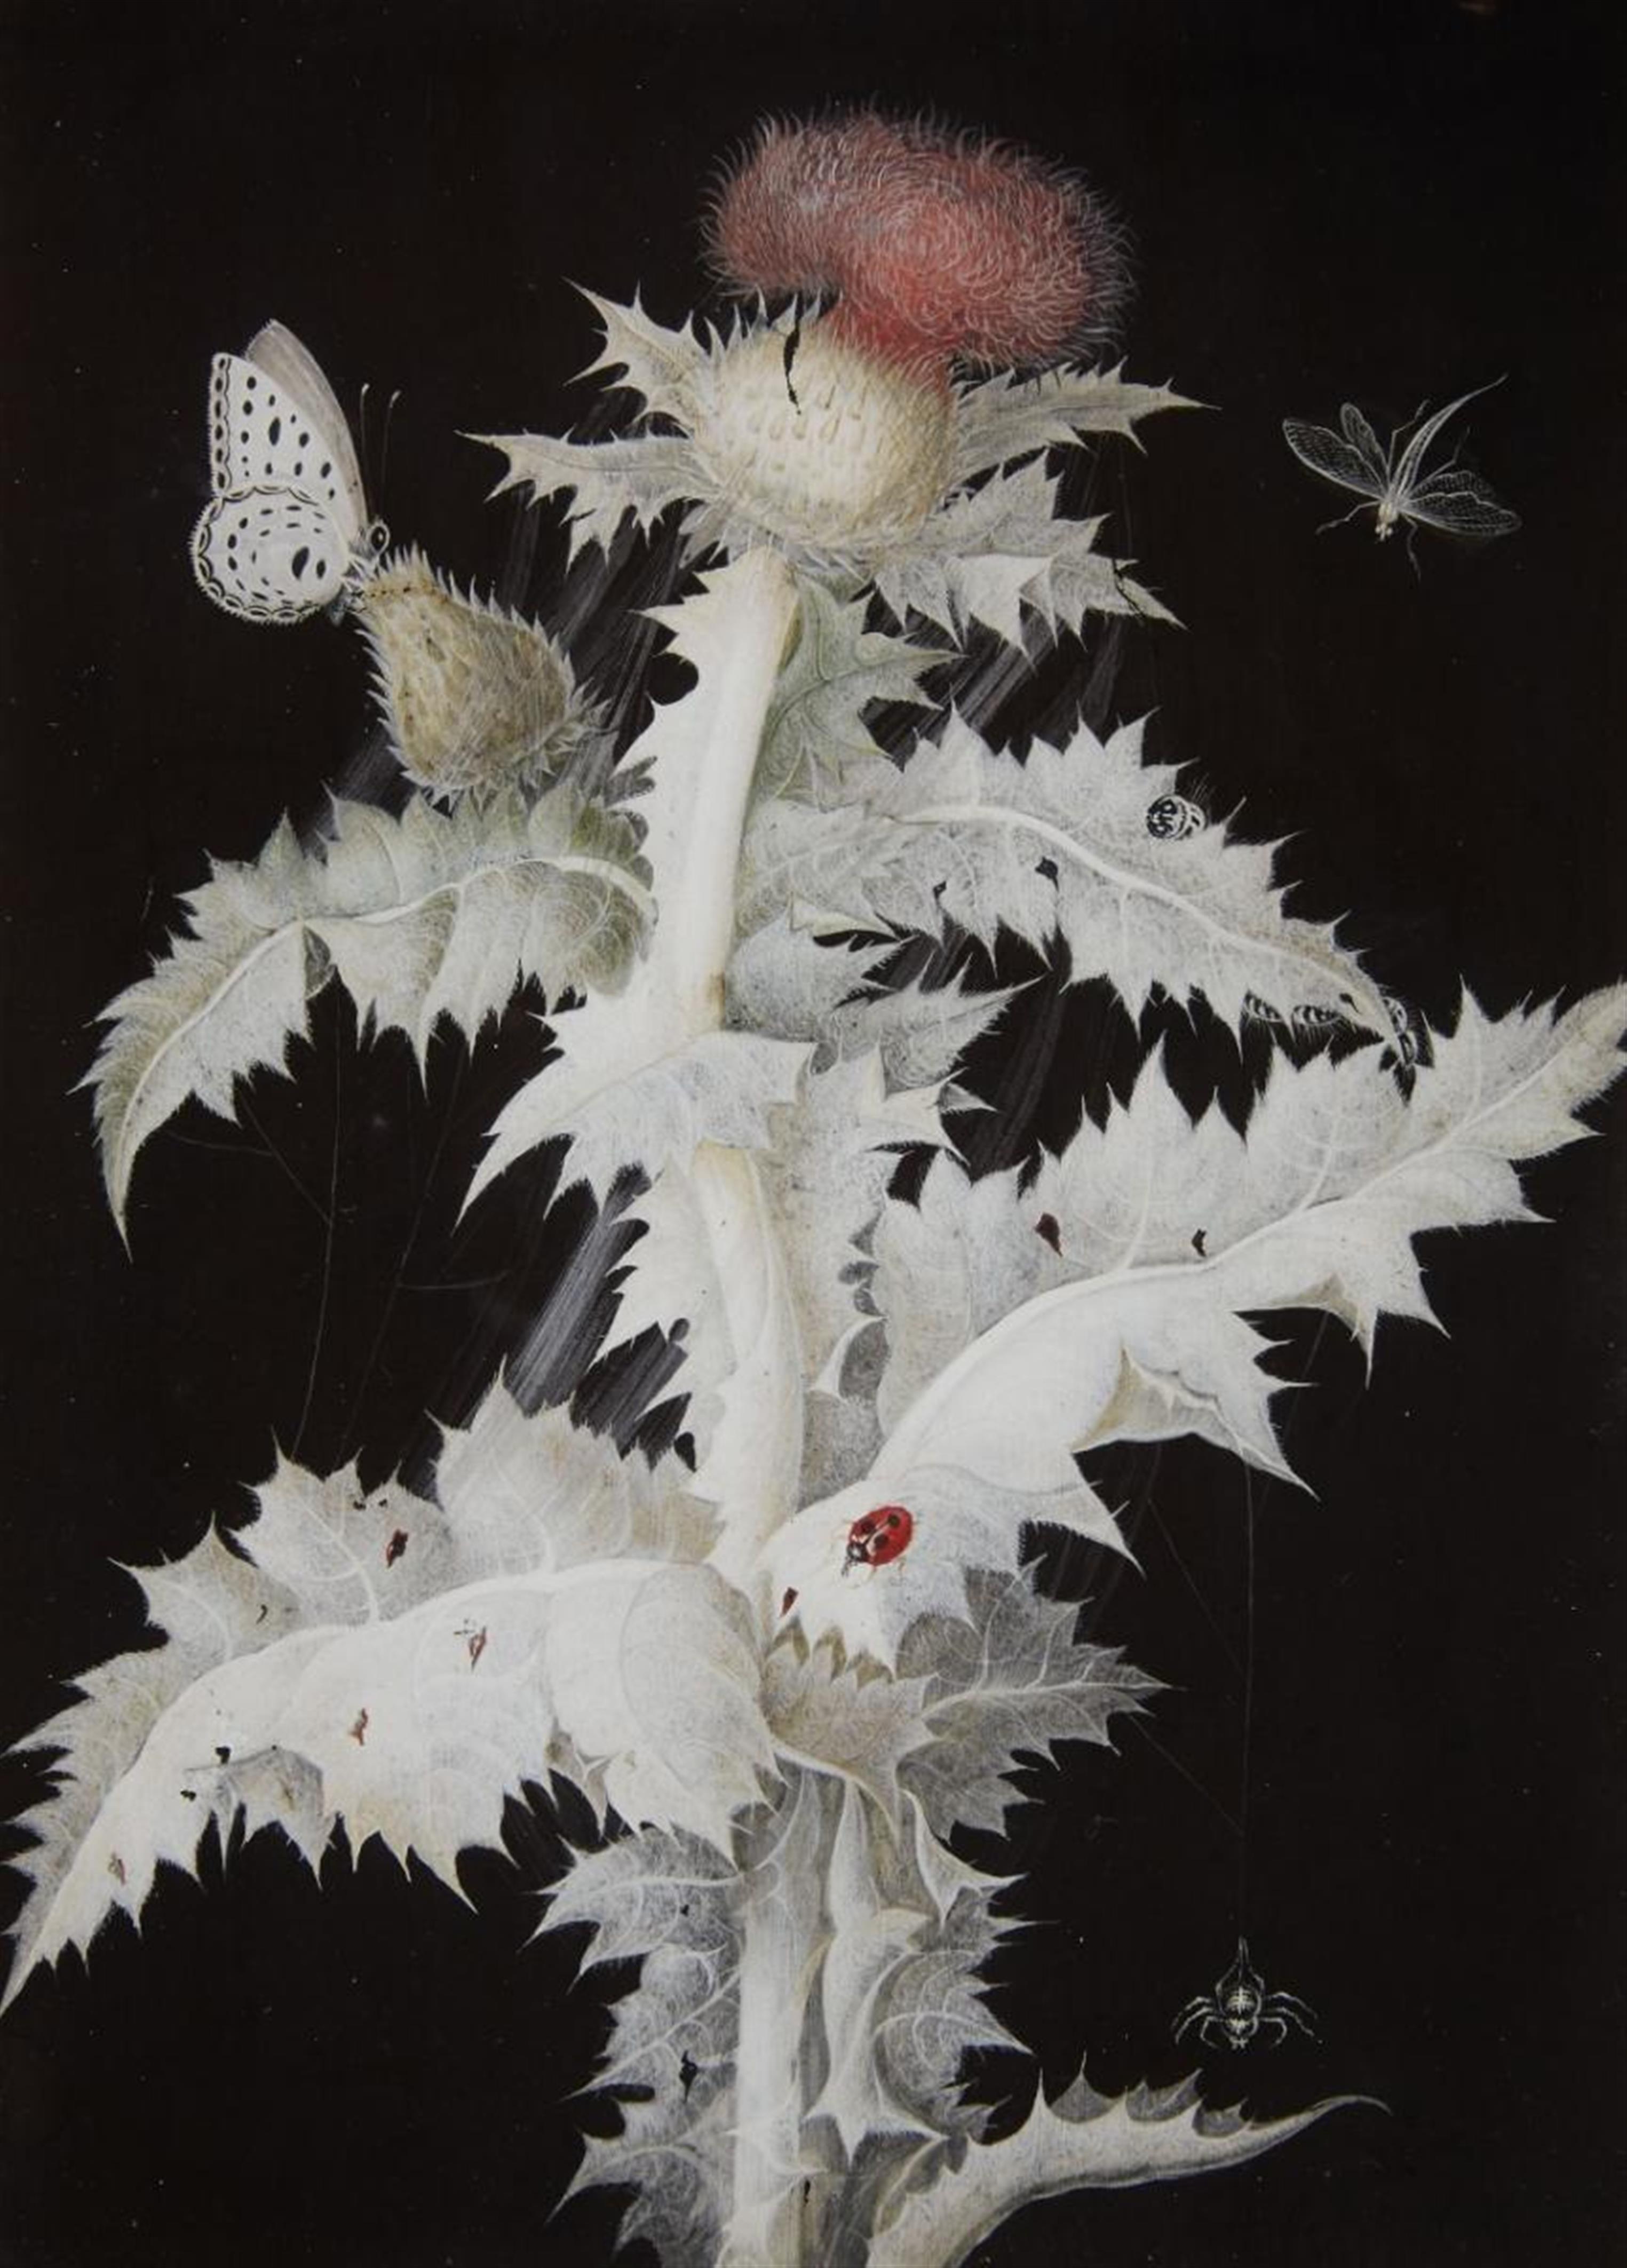 Barbara Regina Diezsch - Distelzweig (Dandelium) mit Schmetterling, Libelle, Marienkäfer und Spinne - image-1